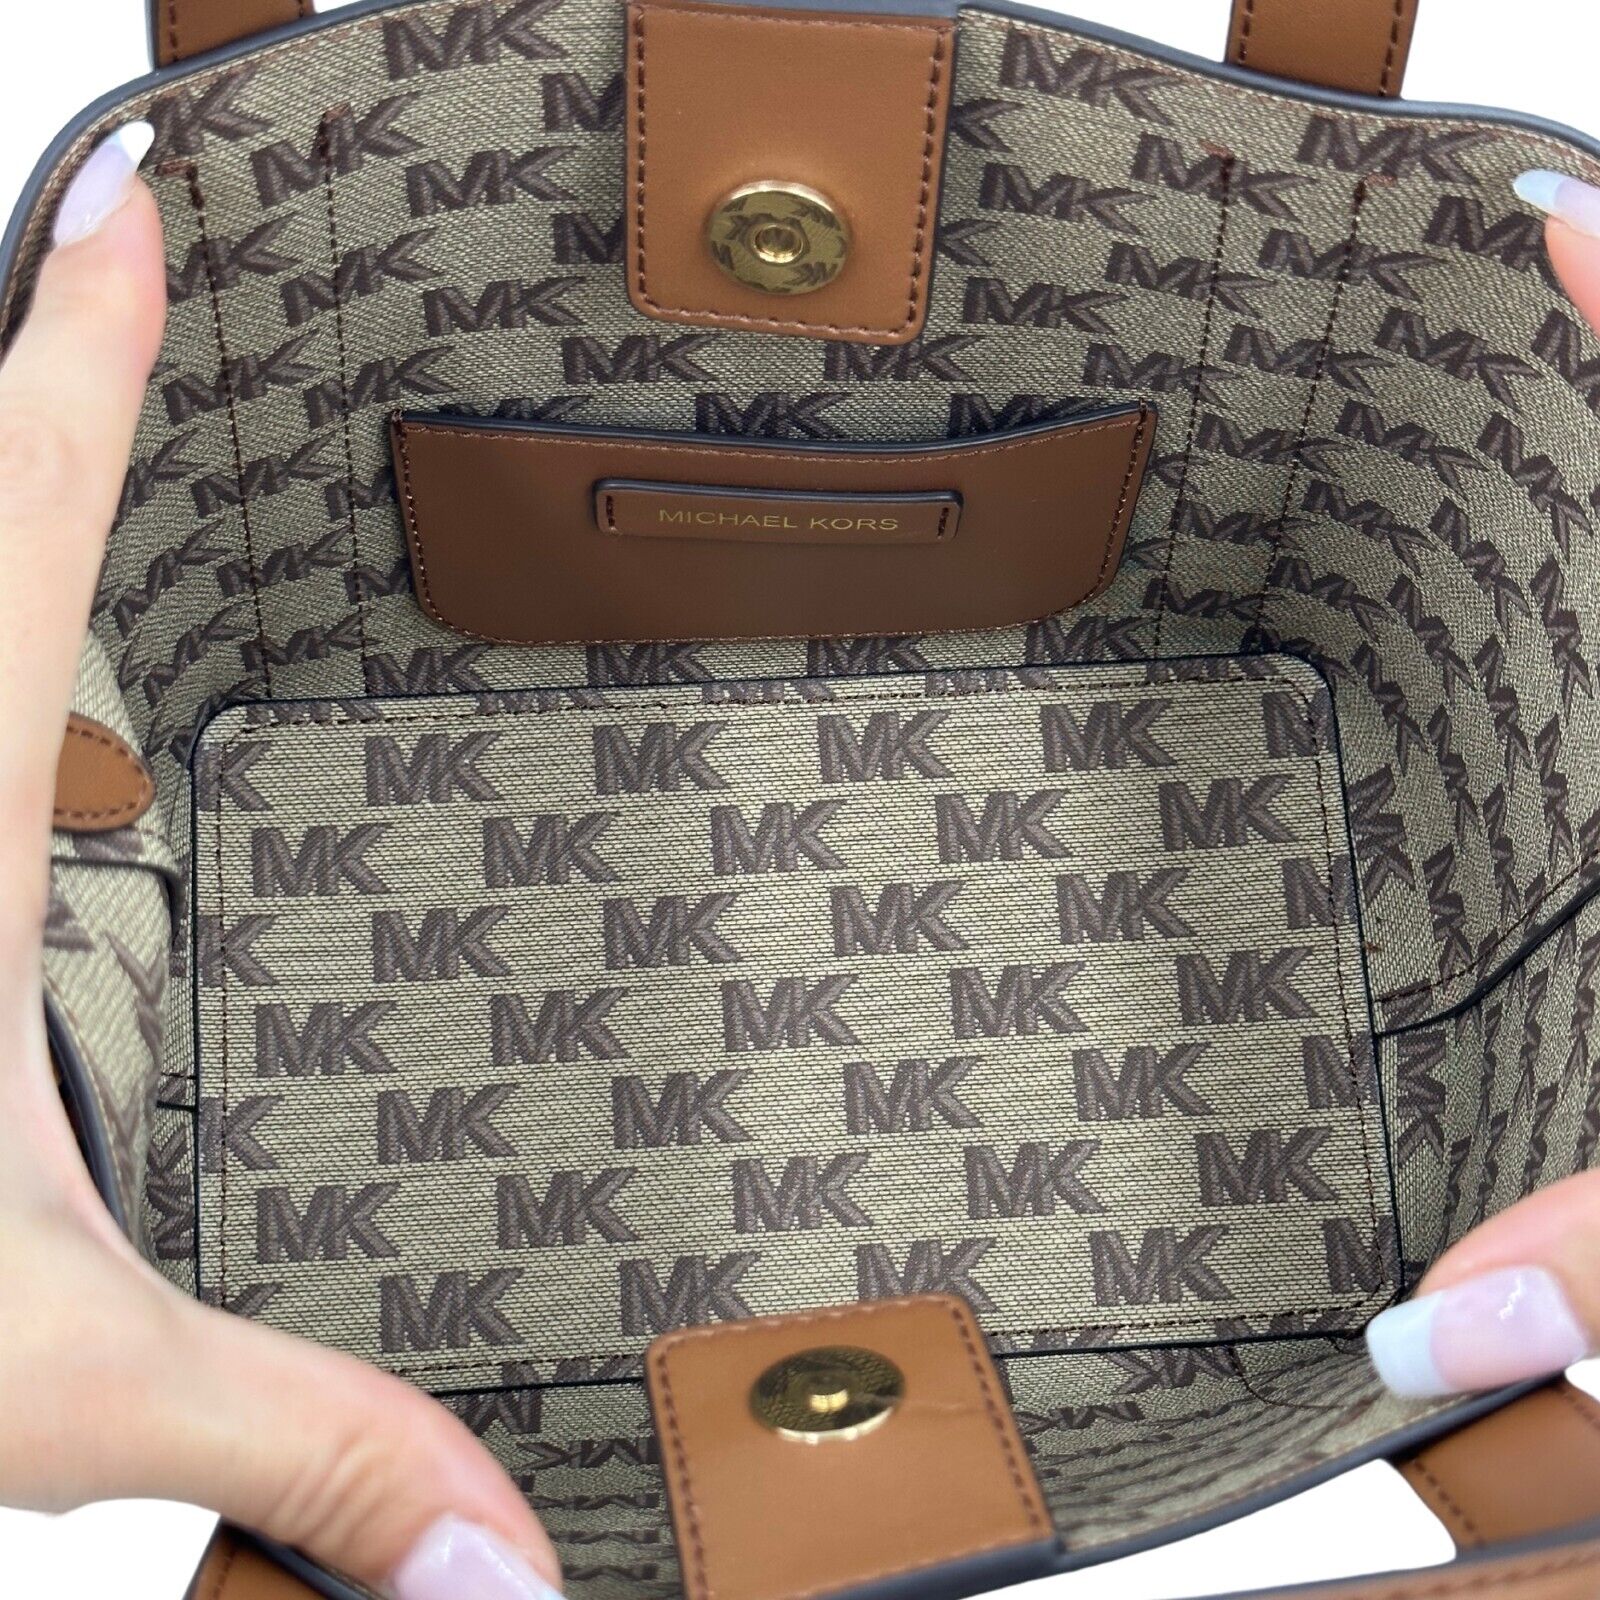 Michael Kors Hadleigh Small Double Handle Tote Bag - Luggage - 196237212863